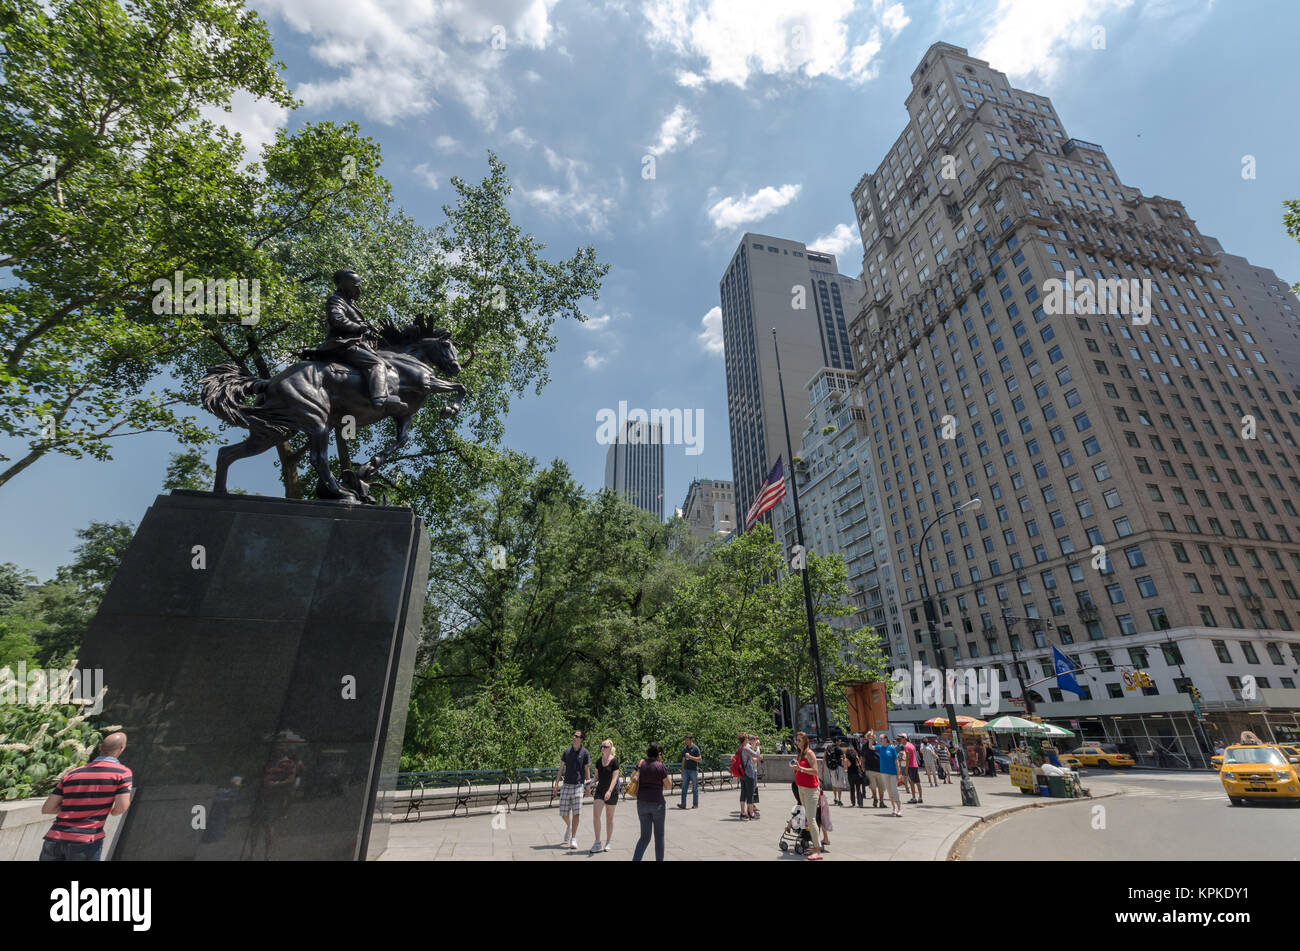 NEW YORK CITY - Juli 12: Jose Marti Statue in der Nähe von Central Park am 12. Juli 2012 in New York. Der Central Park ist ein öffentlicher Park im Zentrum von Manhattan. T Stockfoto